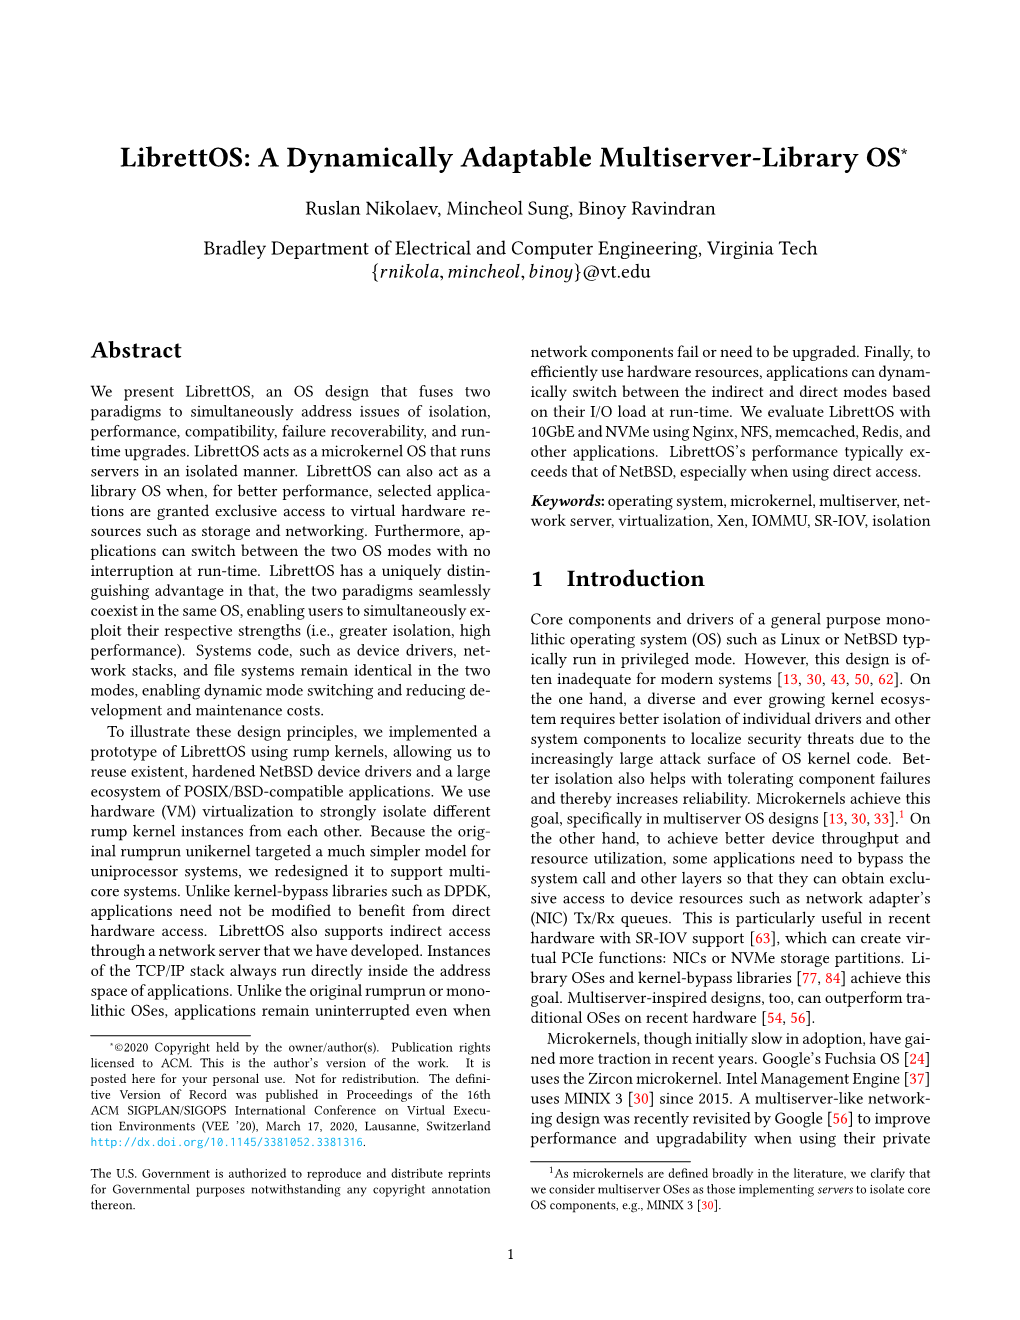 Librettos: a Dynamically Adaptable Multiserver-Library OS∗